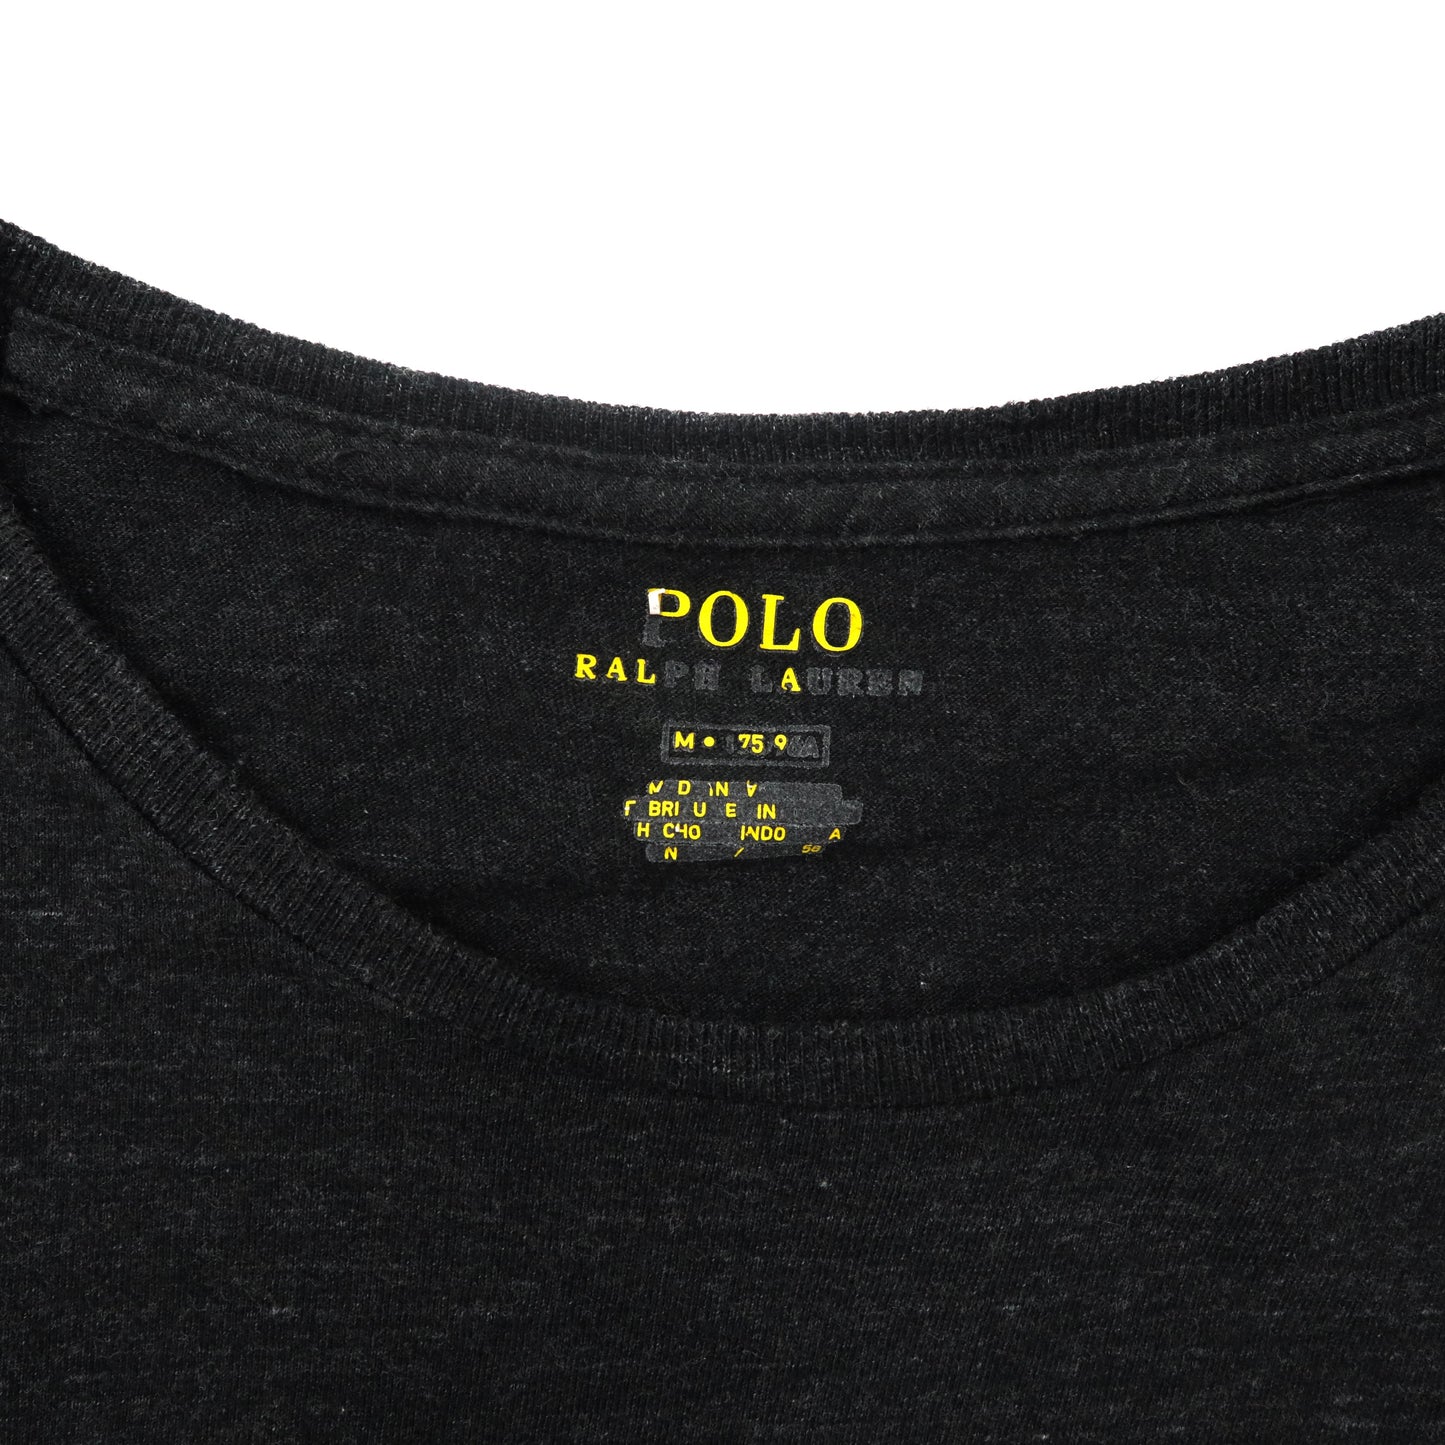 POLO RALPH LAUREN Tシャツ M グレー コットン スモールポニー刺繍